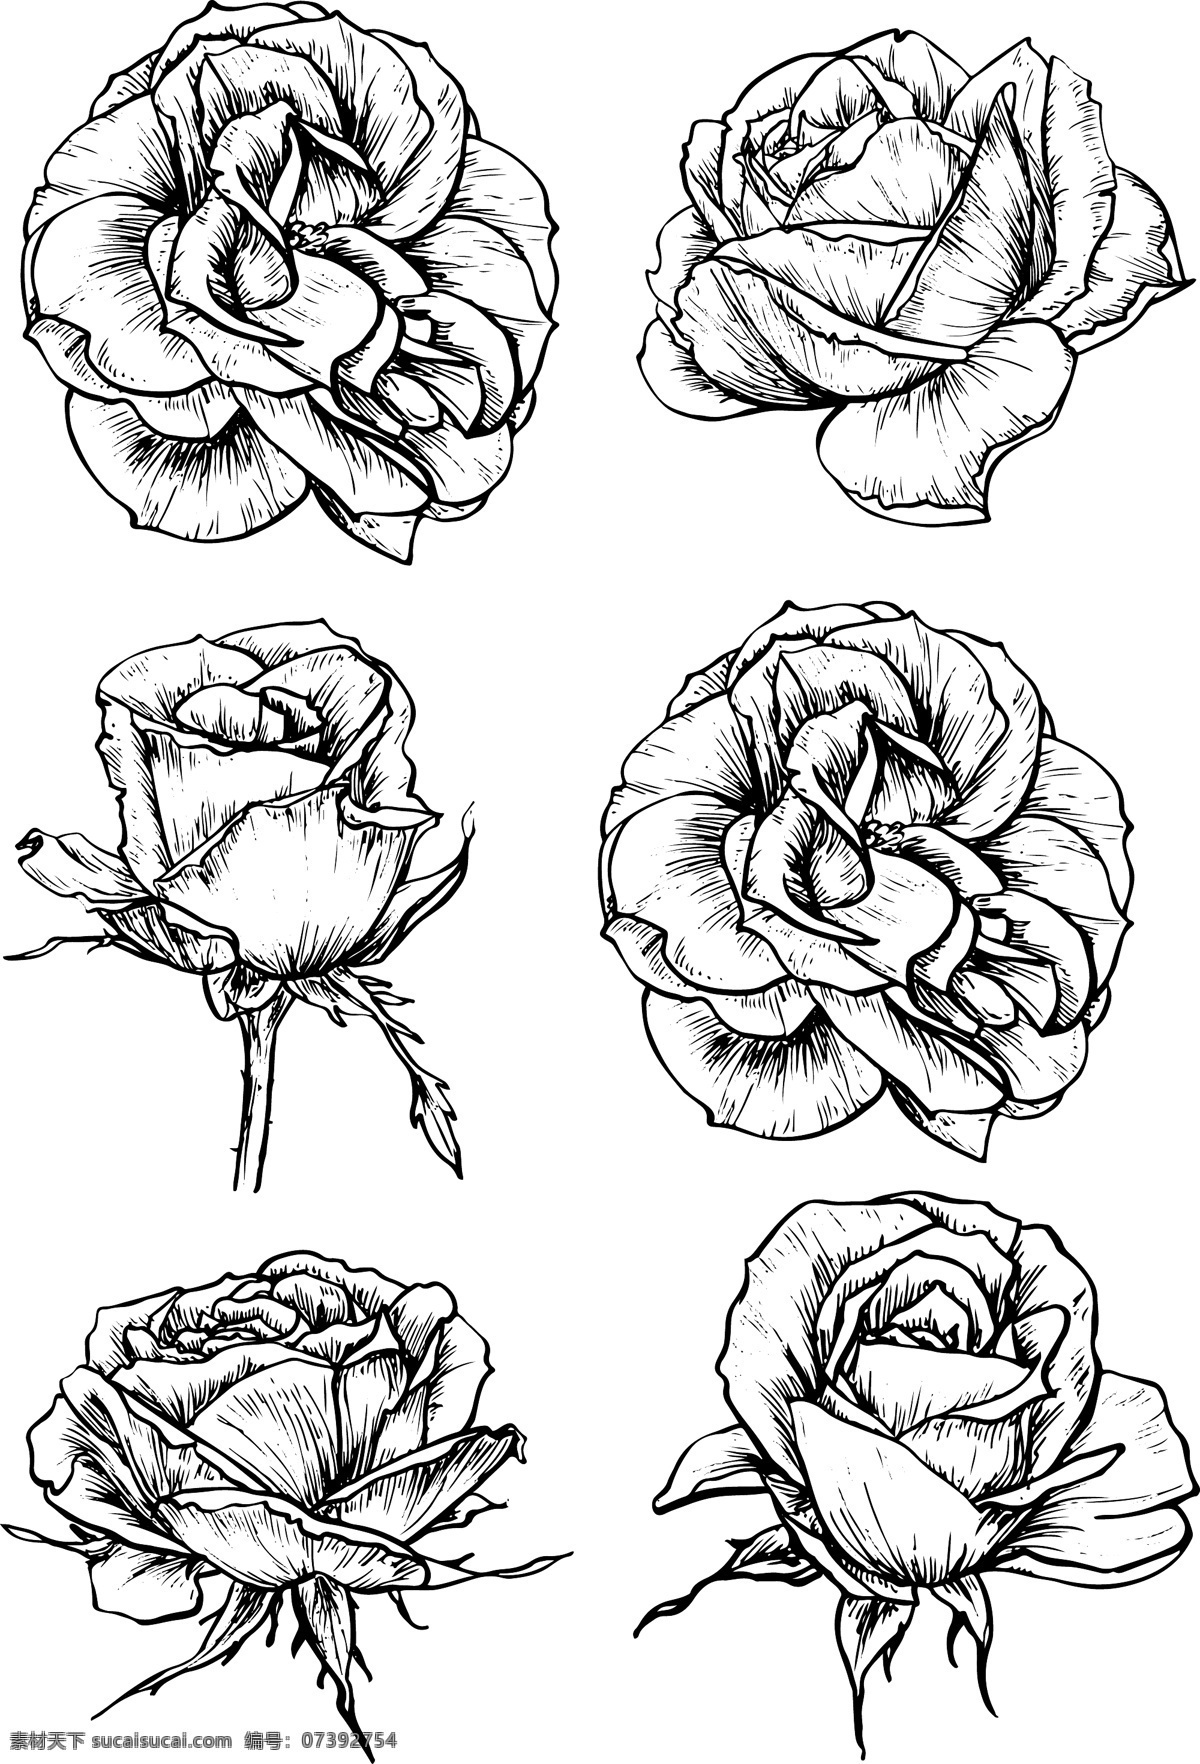 黑白 线条 手绘 玫瑰花 插画 植物 速写 唯美 浪漫